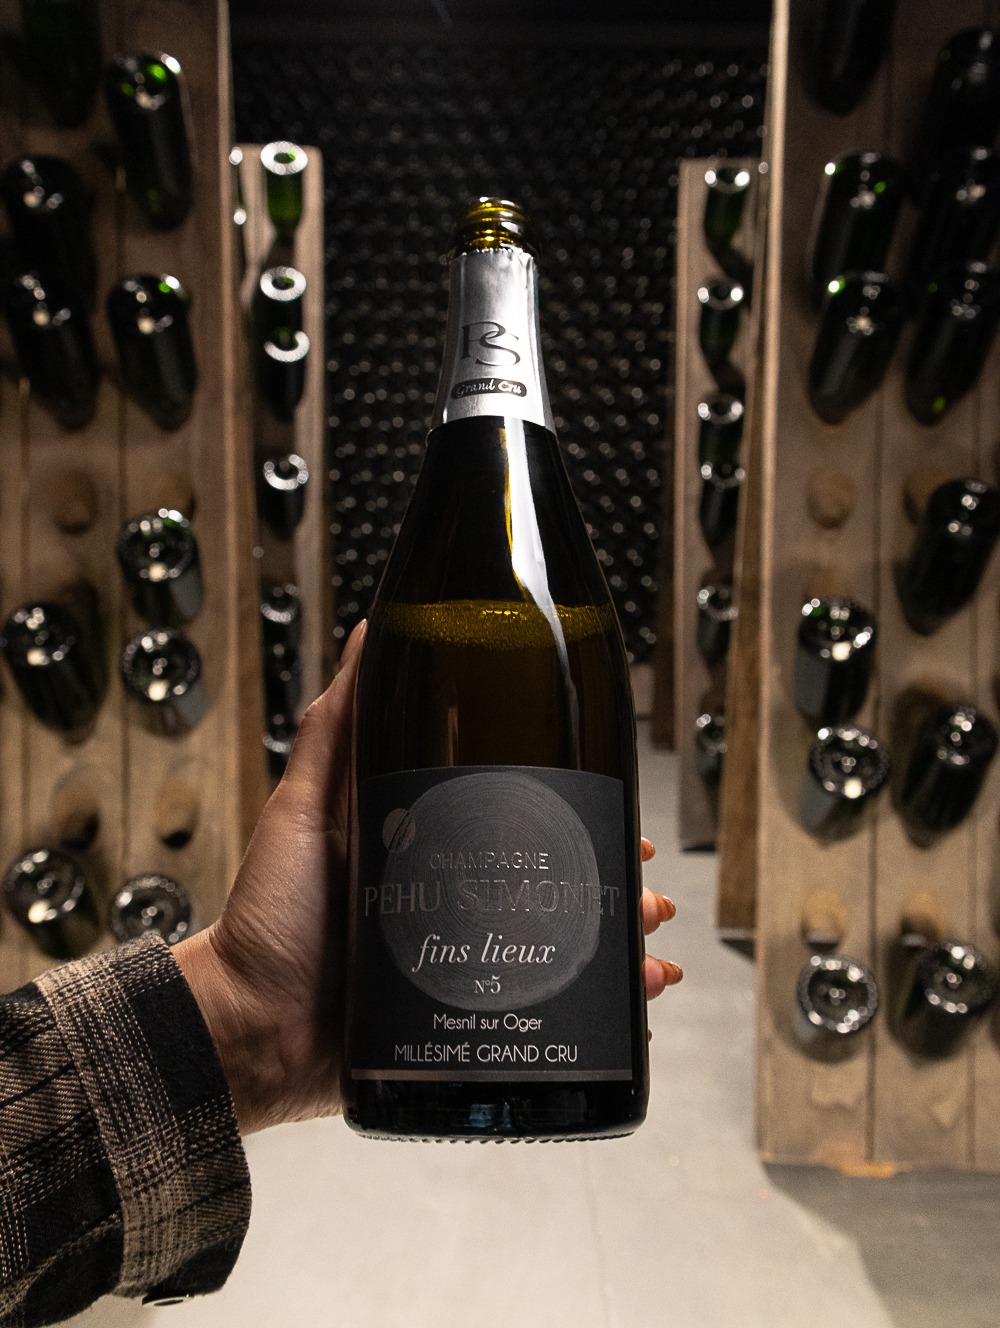 Champagne Pehu-Simonet Blanc de Blancs Fins Lieux n°5 Le Mesnil-sur-Oger Grand Cru 2015